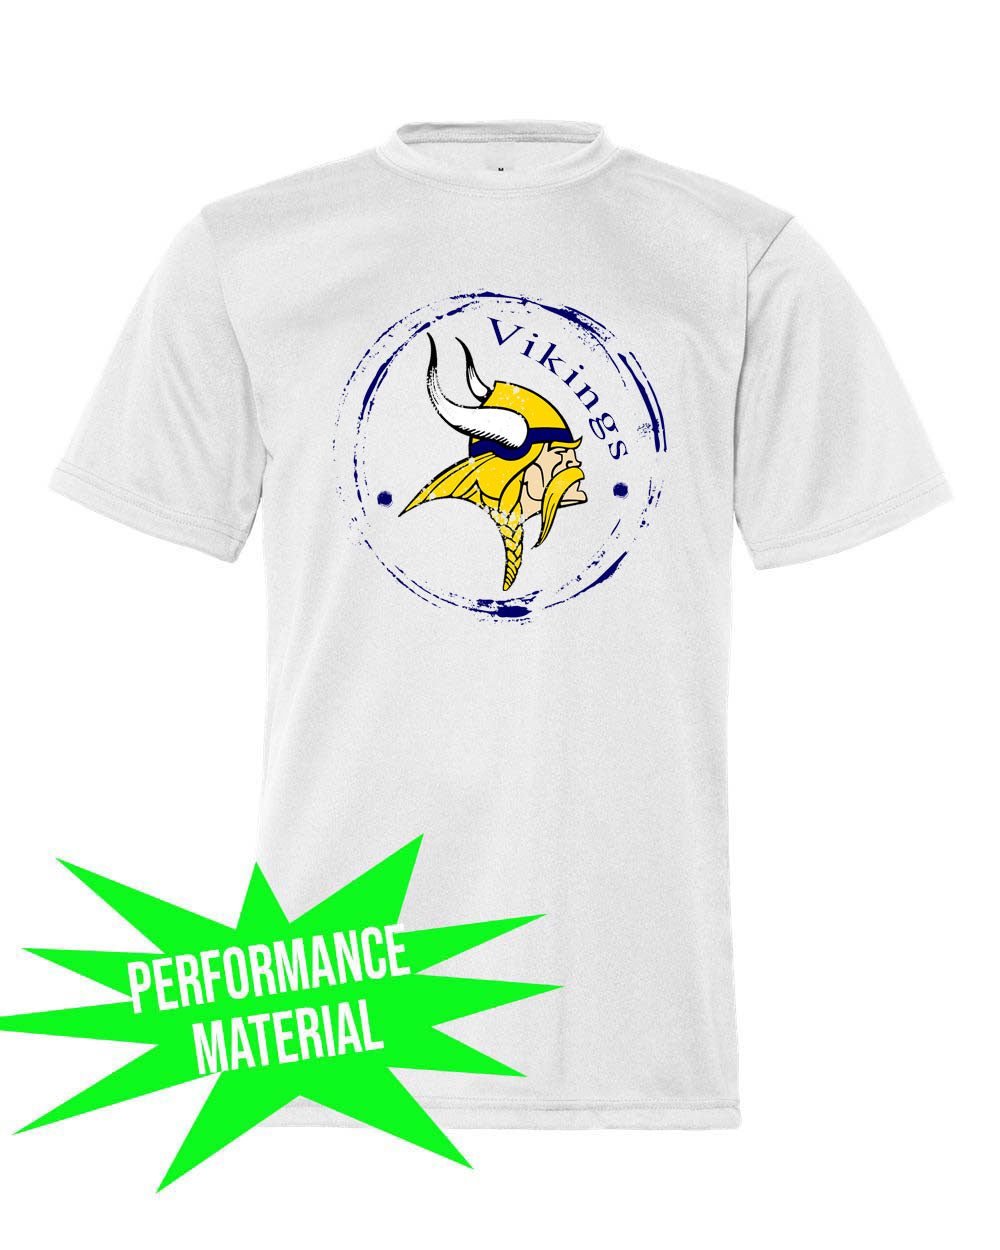 Glen Meadow Performance Material T-Shirt  Design 3